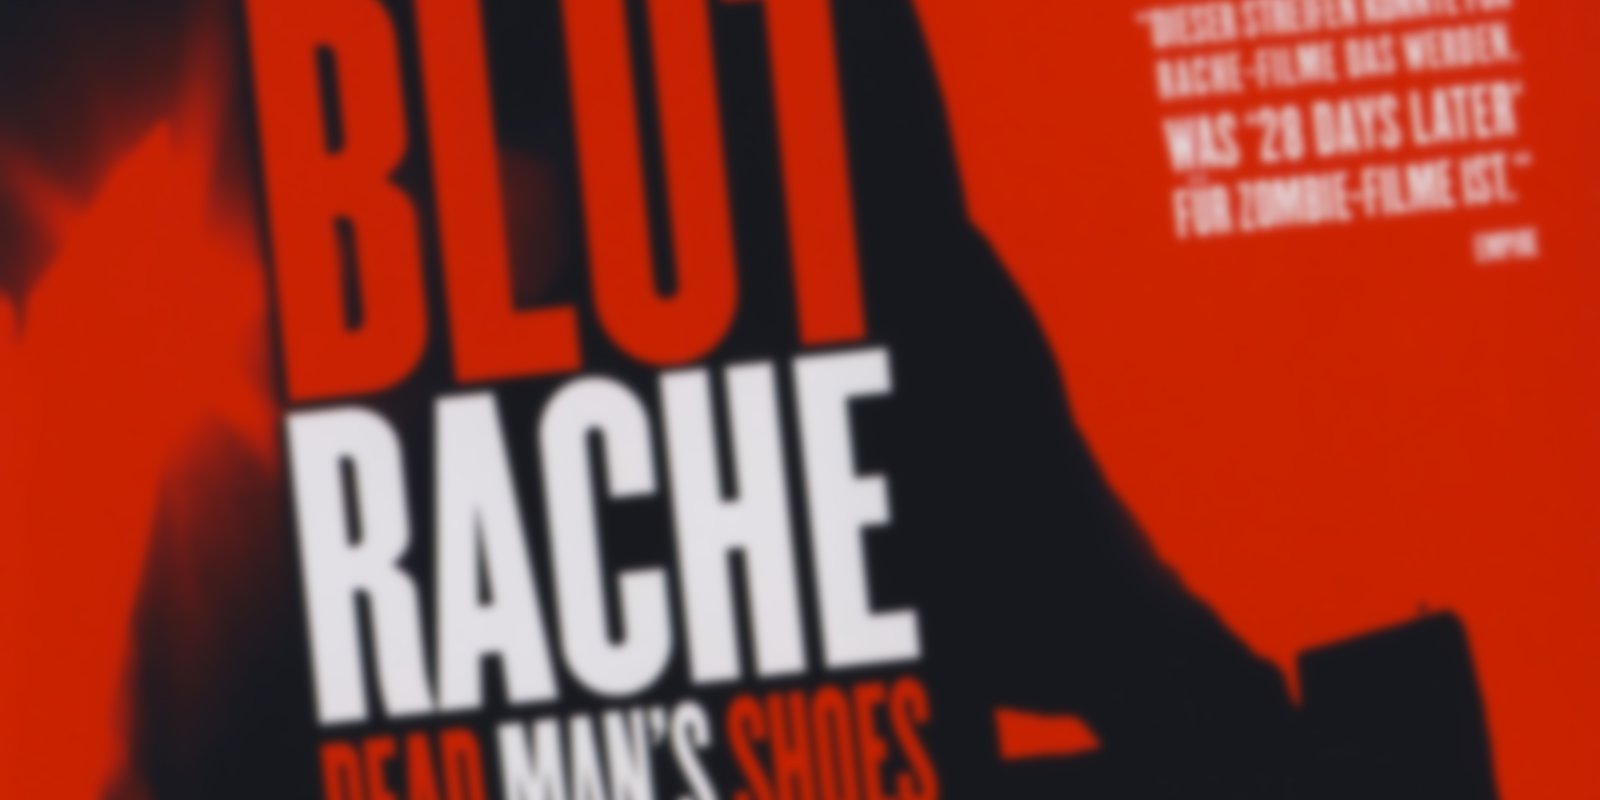 Dead Man's Shoes - Blutrache